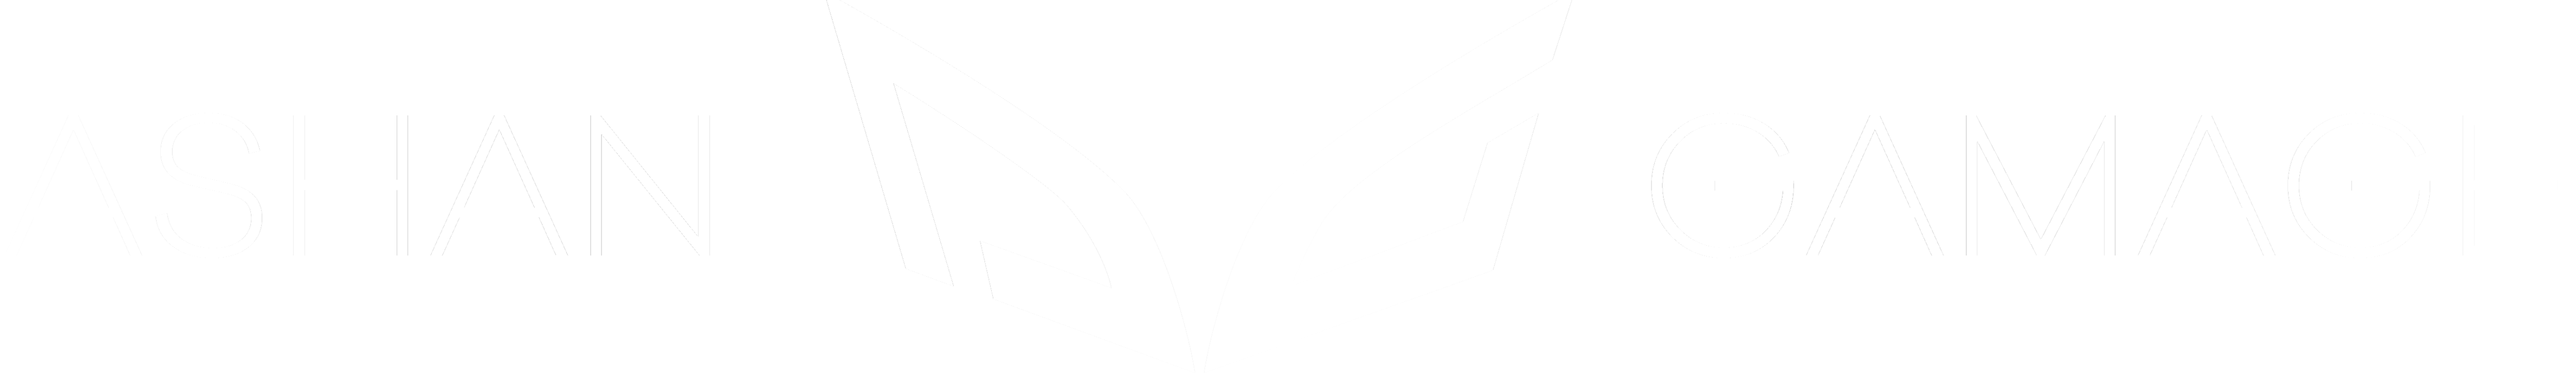 Ashan-Gamage-Luxury-Cars-Logo-V7 (1)